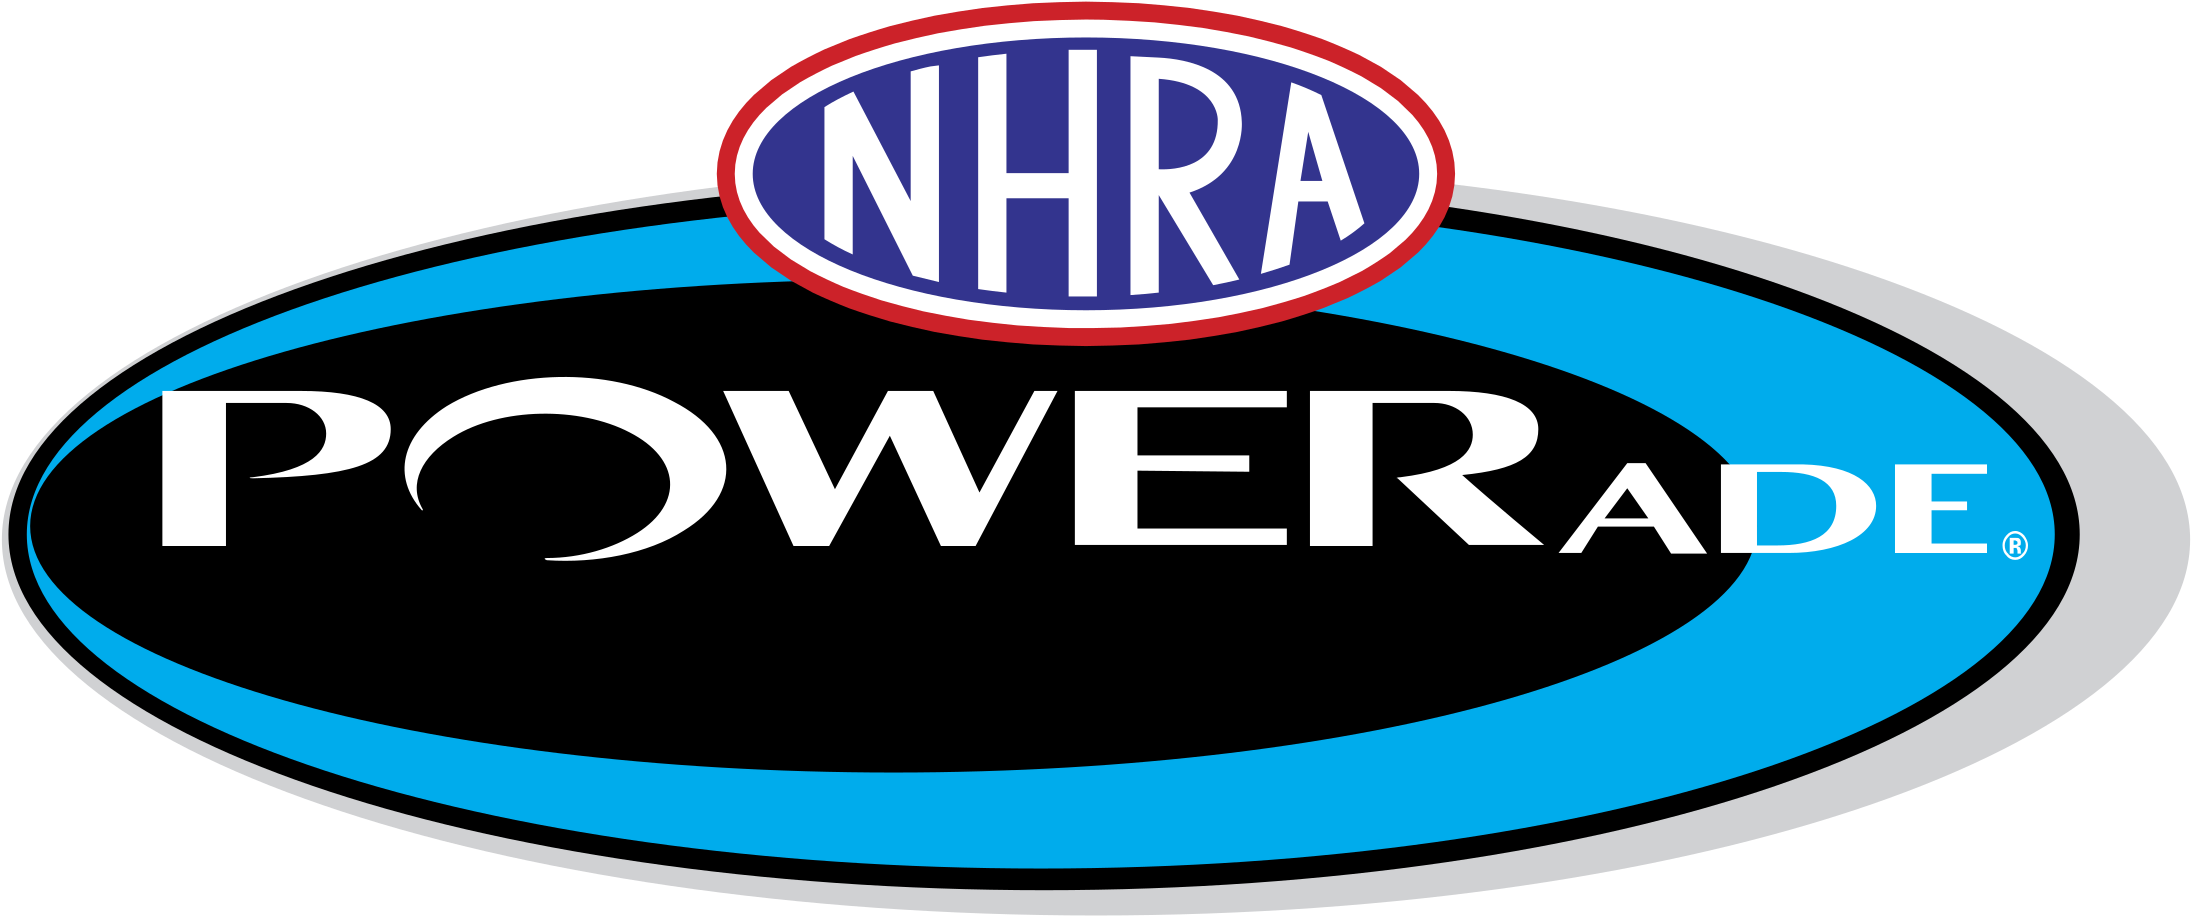 Nhra Powerade Logo Png Transparent - Nhra Drag Racing Flag (2400x2400), Png Download